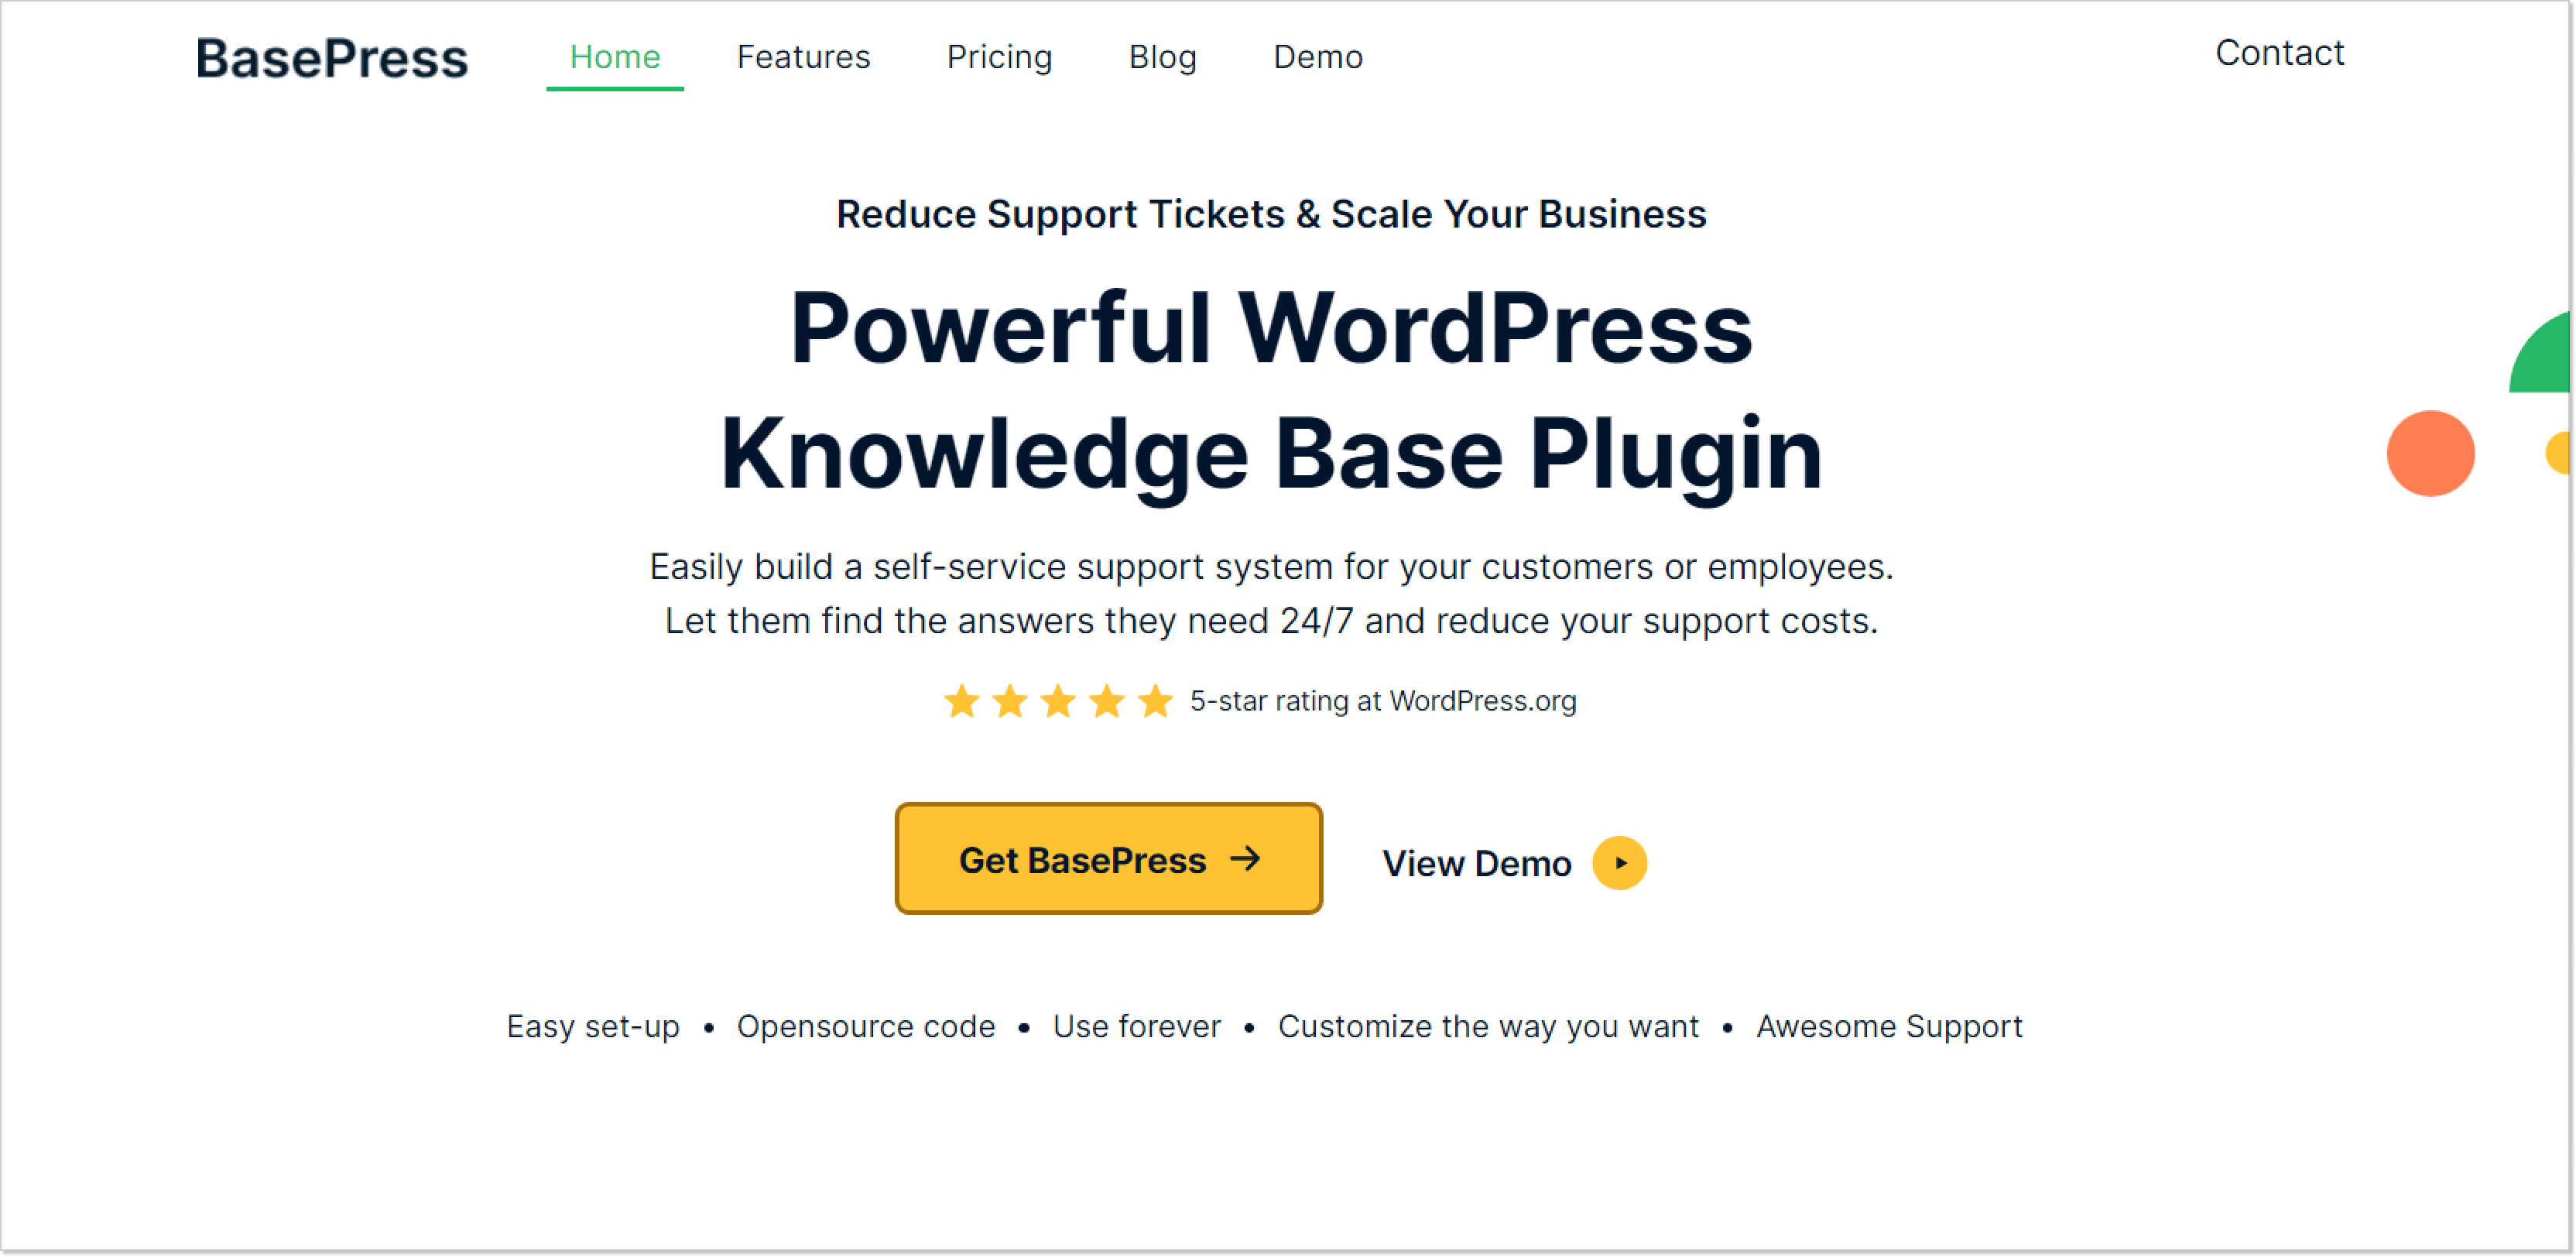 BasePress wordpress knowledge base plugin landing page